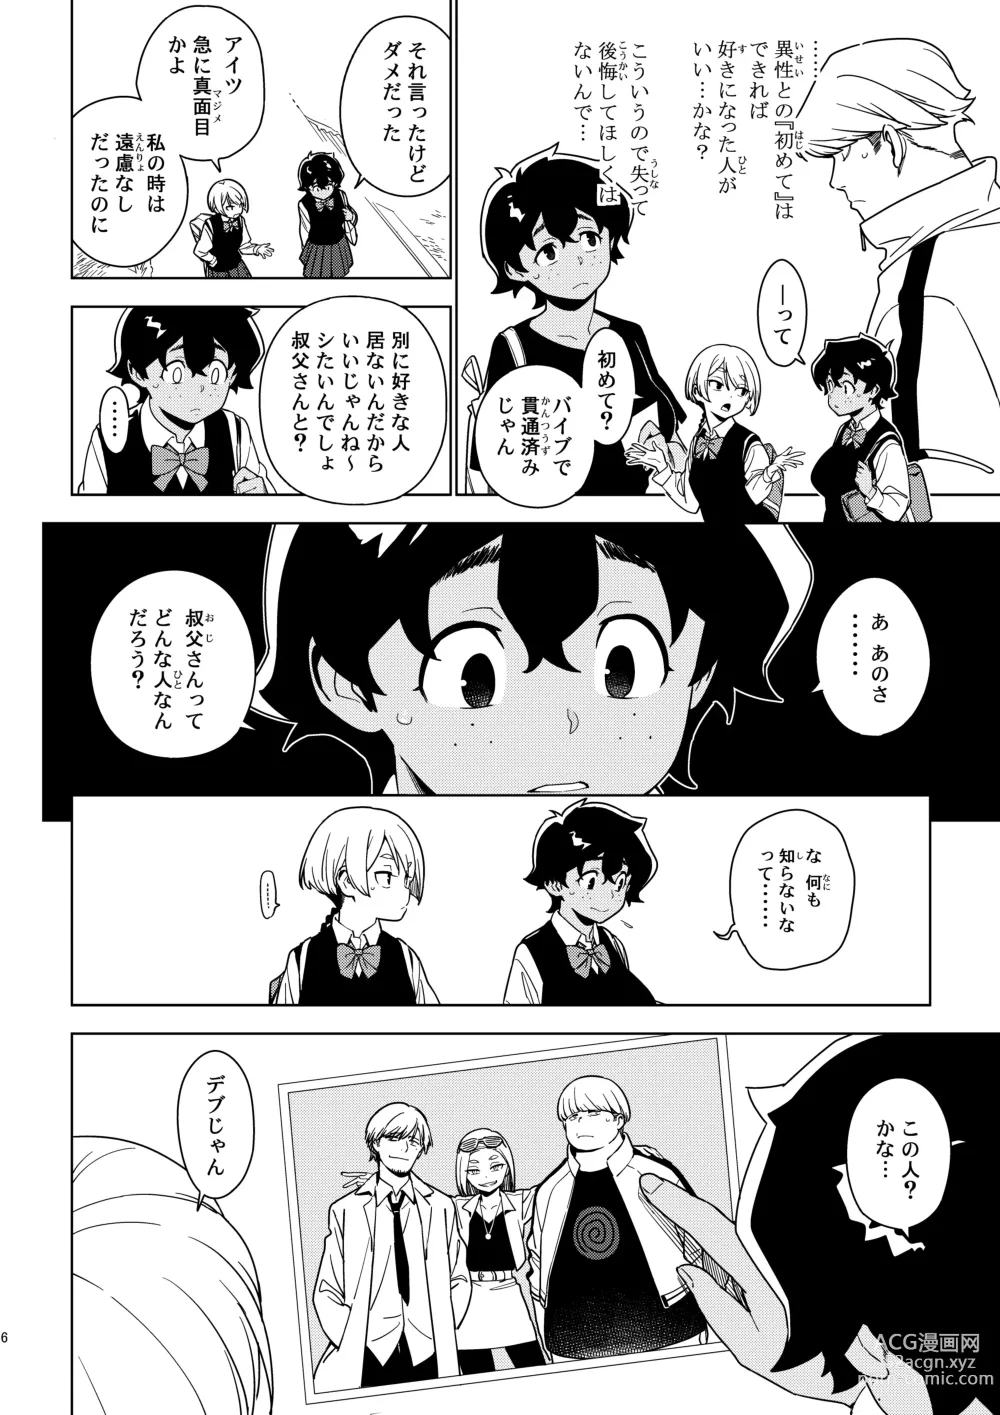 Page 5 of doujinshi Seiko